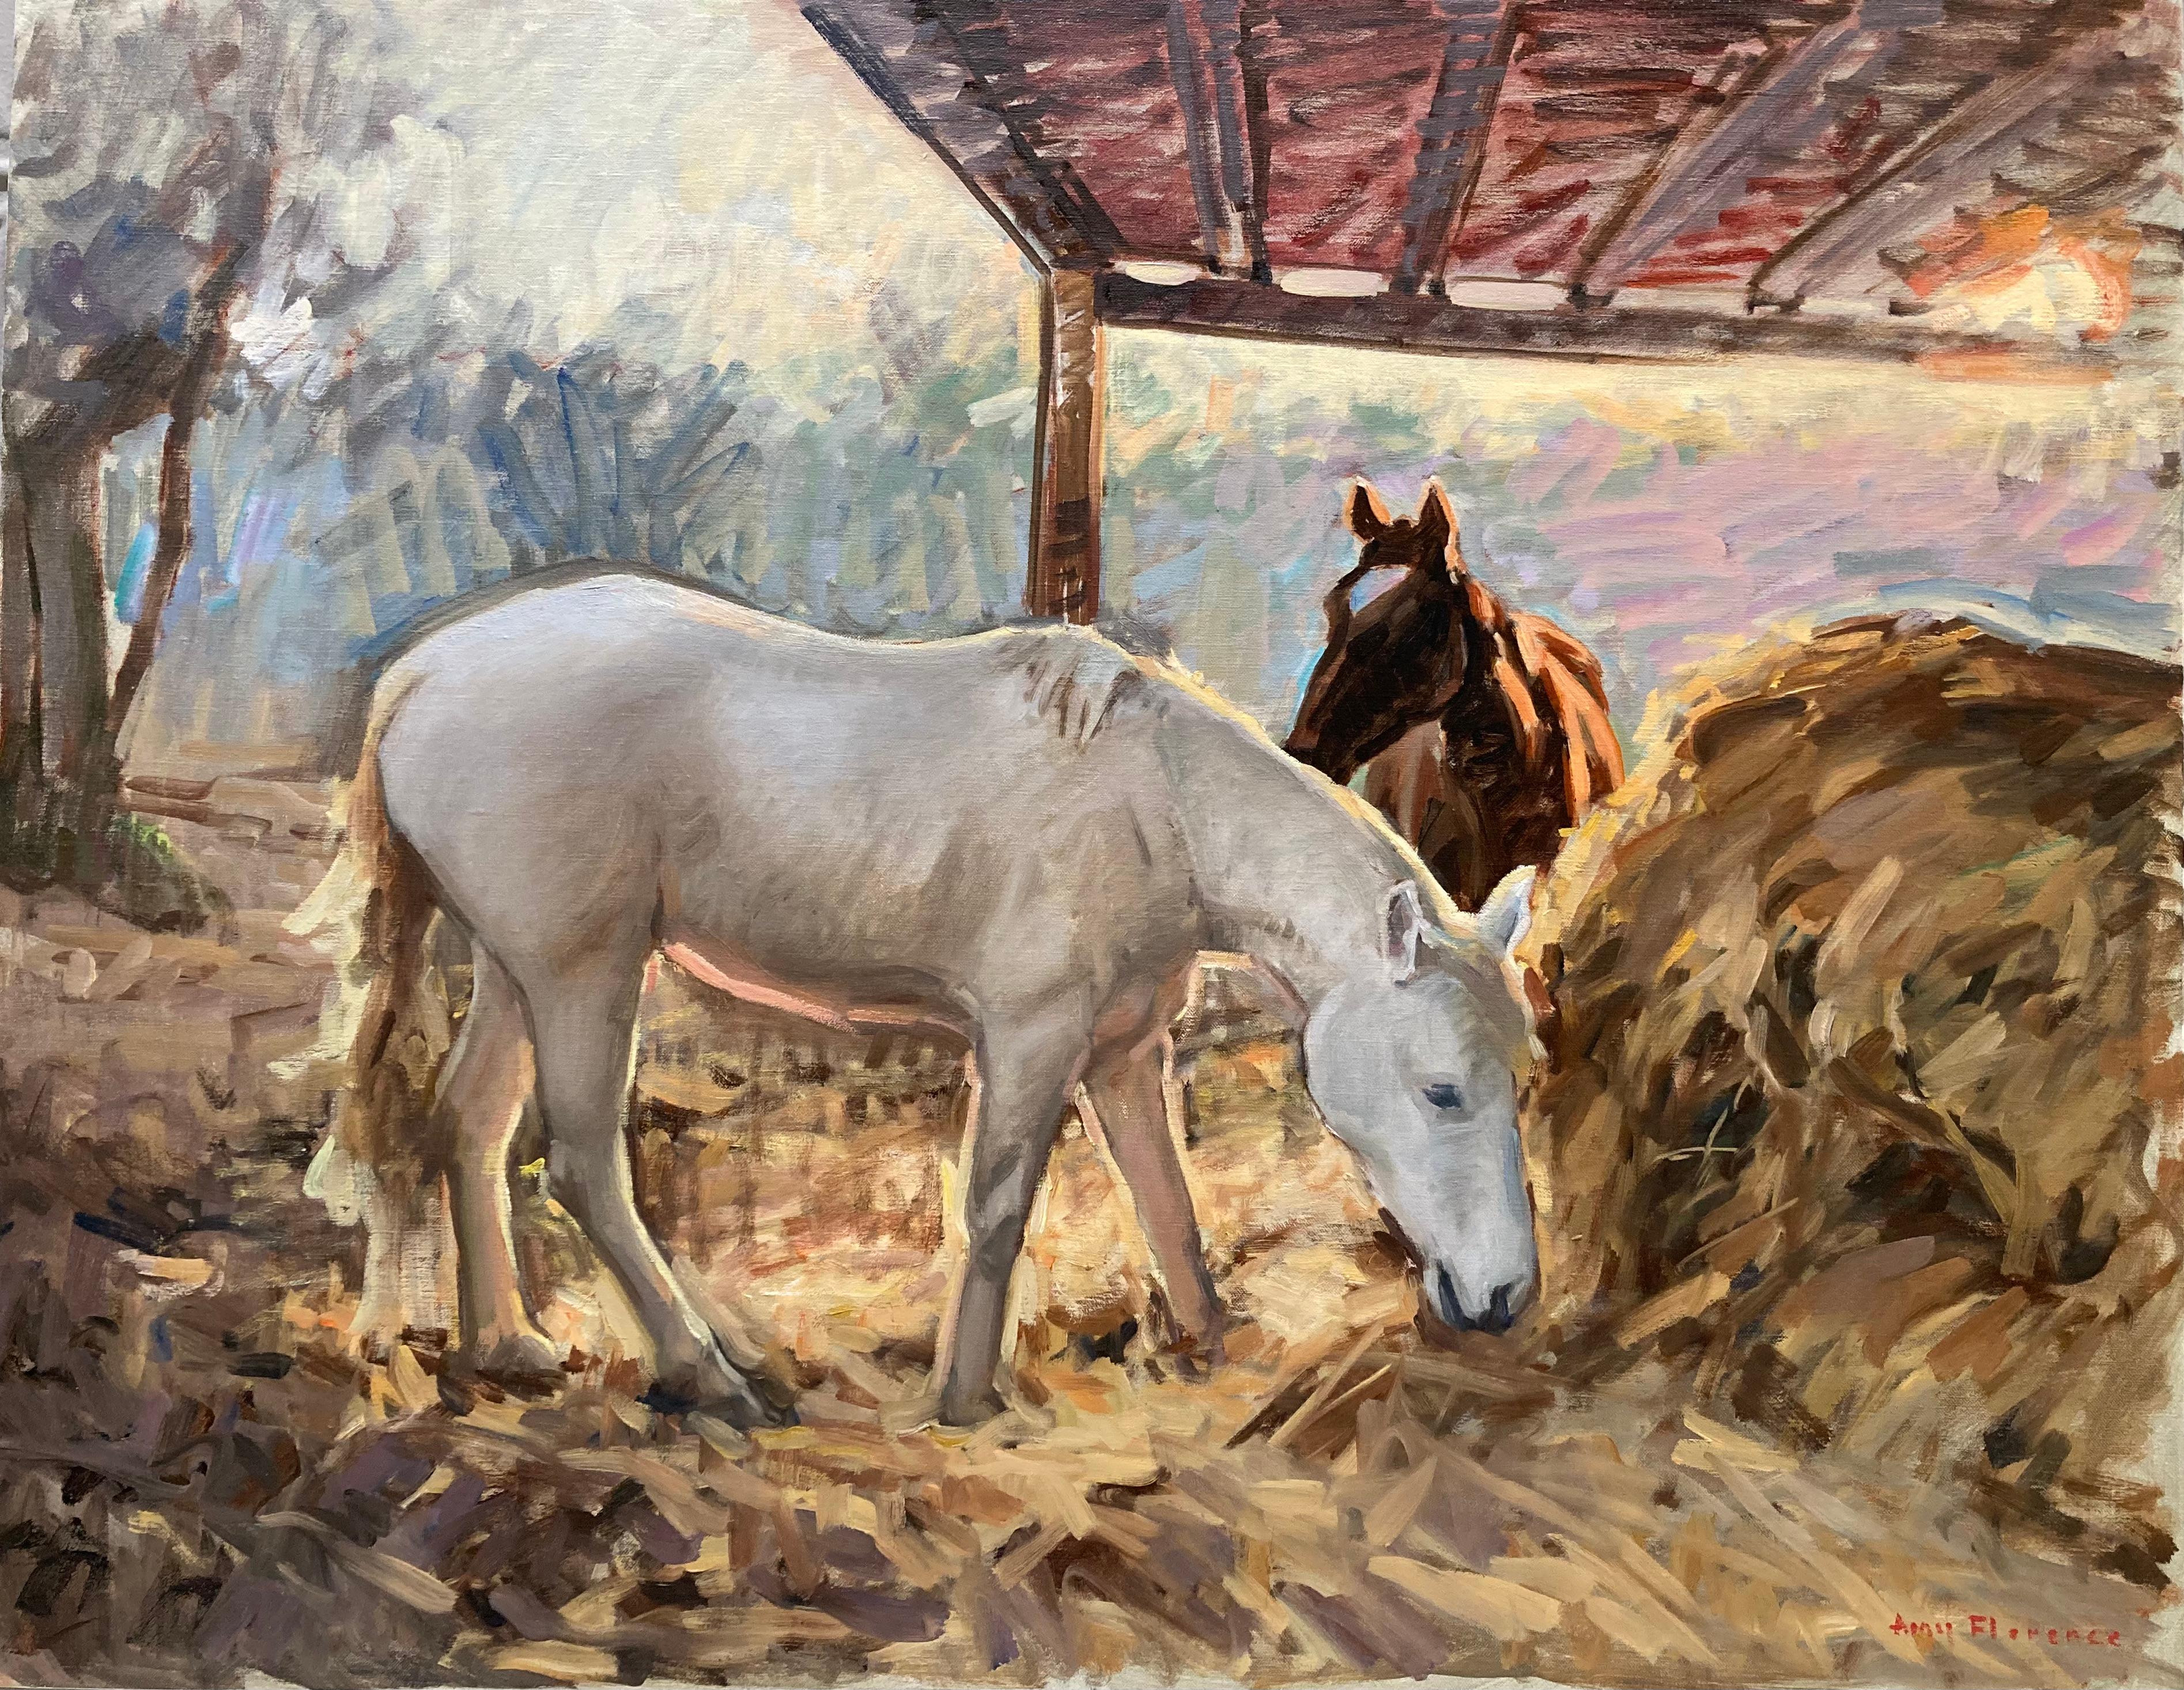 Amy Florence Animal Painting – "Weißes Pferd in der Abenddämmerung, Toskana" Zeitgenössisches impressionistisches pastorales Ölgemälde